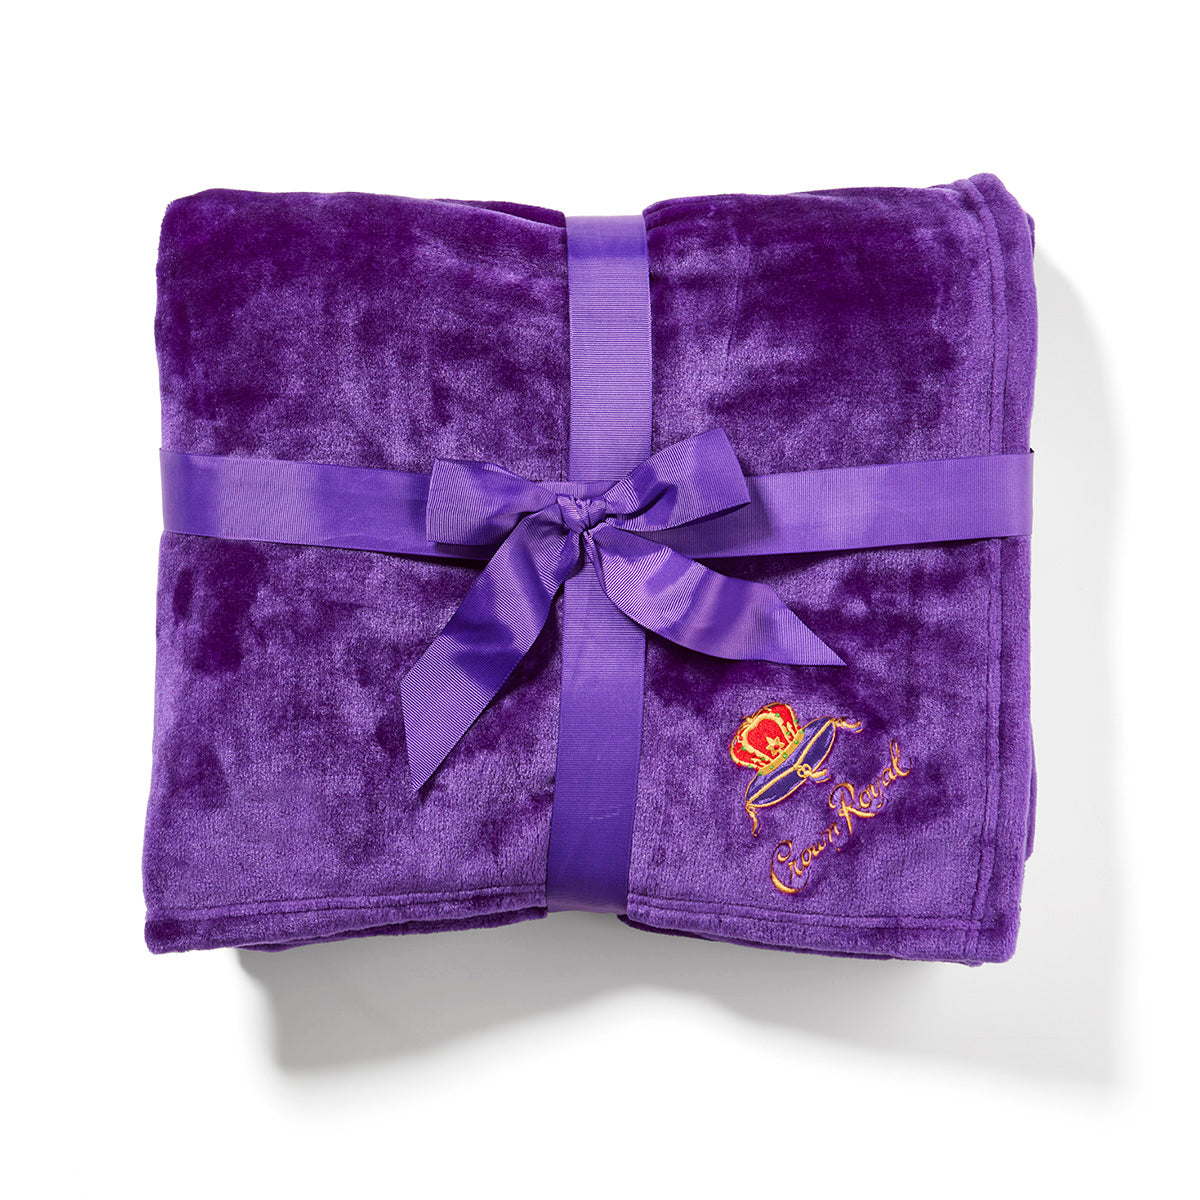 Crown Royal Purple Throw Blanket